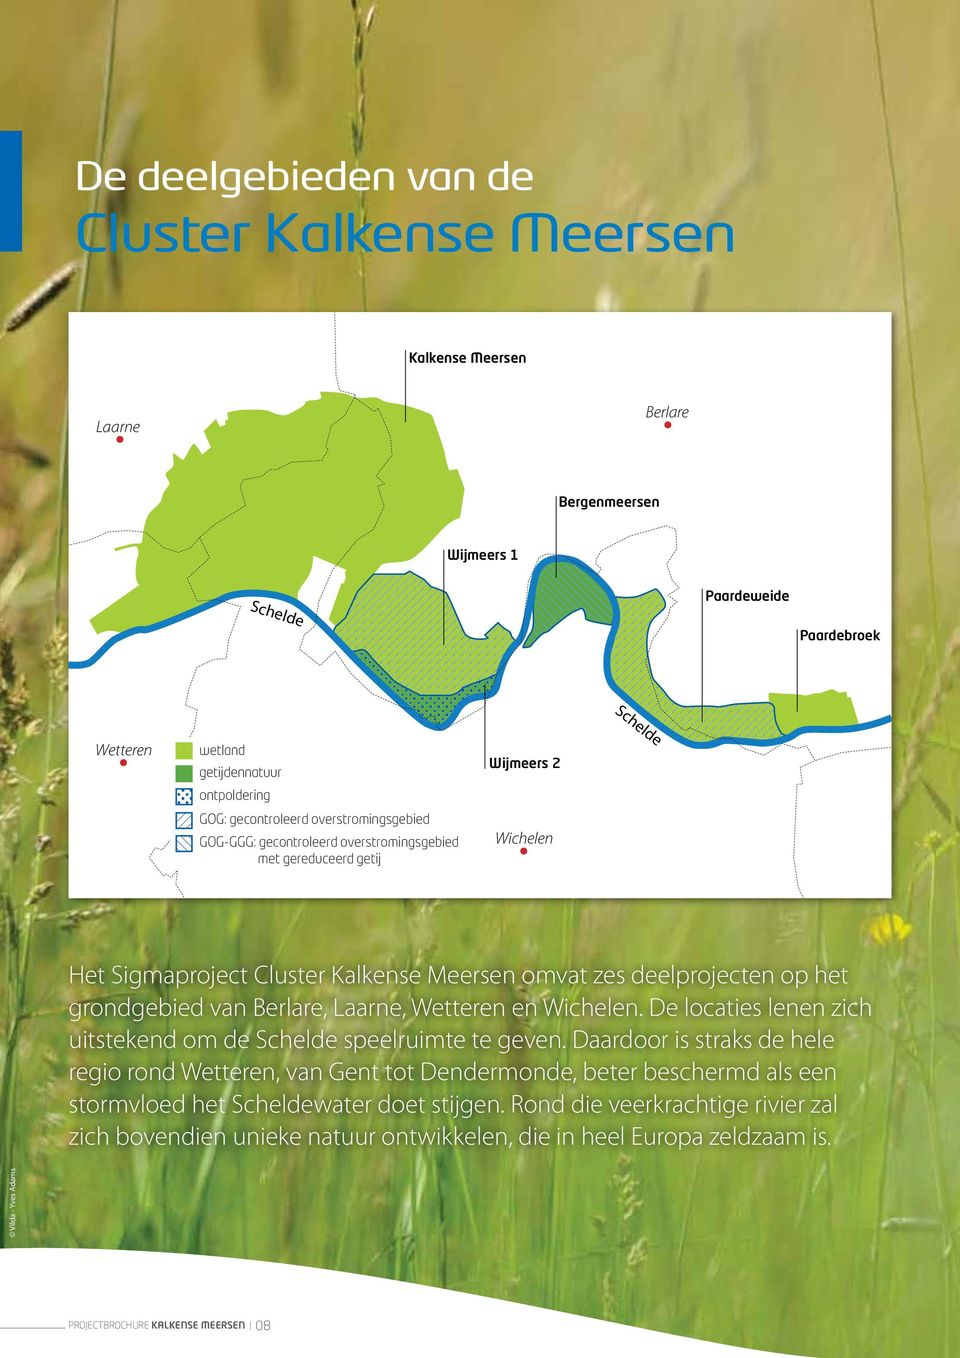 grondgebied van Berlare, Laarne, Wetteren en Wichelen. De locaties lenen zich uitstekend om de Schelde speelruimte te geven.